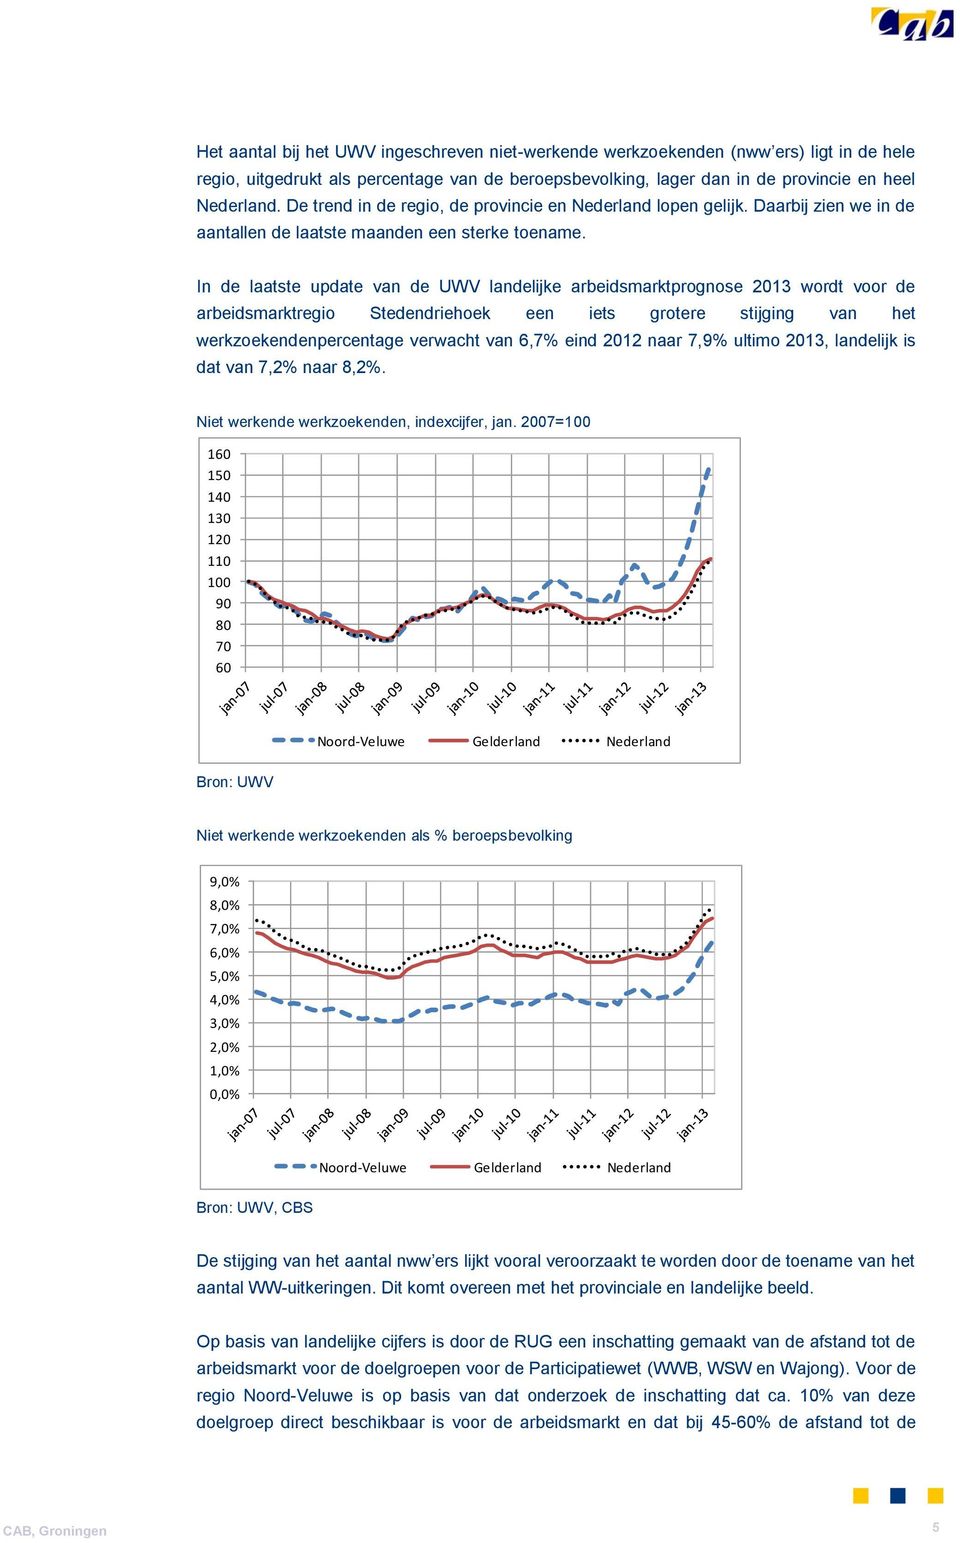 In de laatste update van de UWV landelijke arbeidsmarktprognose 2013 wordt voor de arbeidsmarktregio Stedendriehoek een iets grotere stijging van het werkzoekendenpercentage verwacht van 6,7% eind